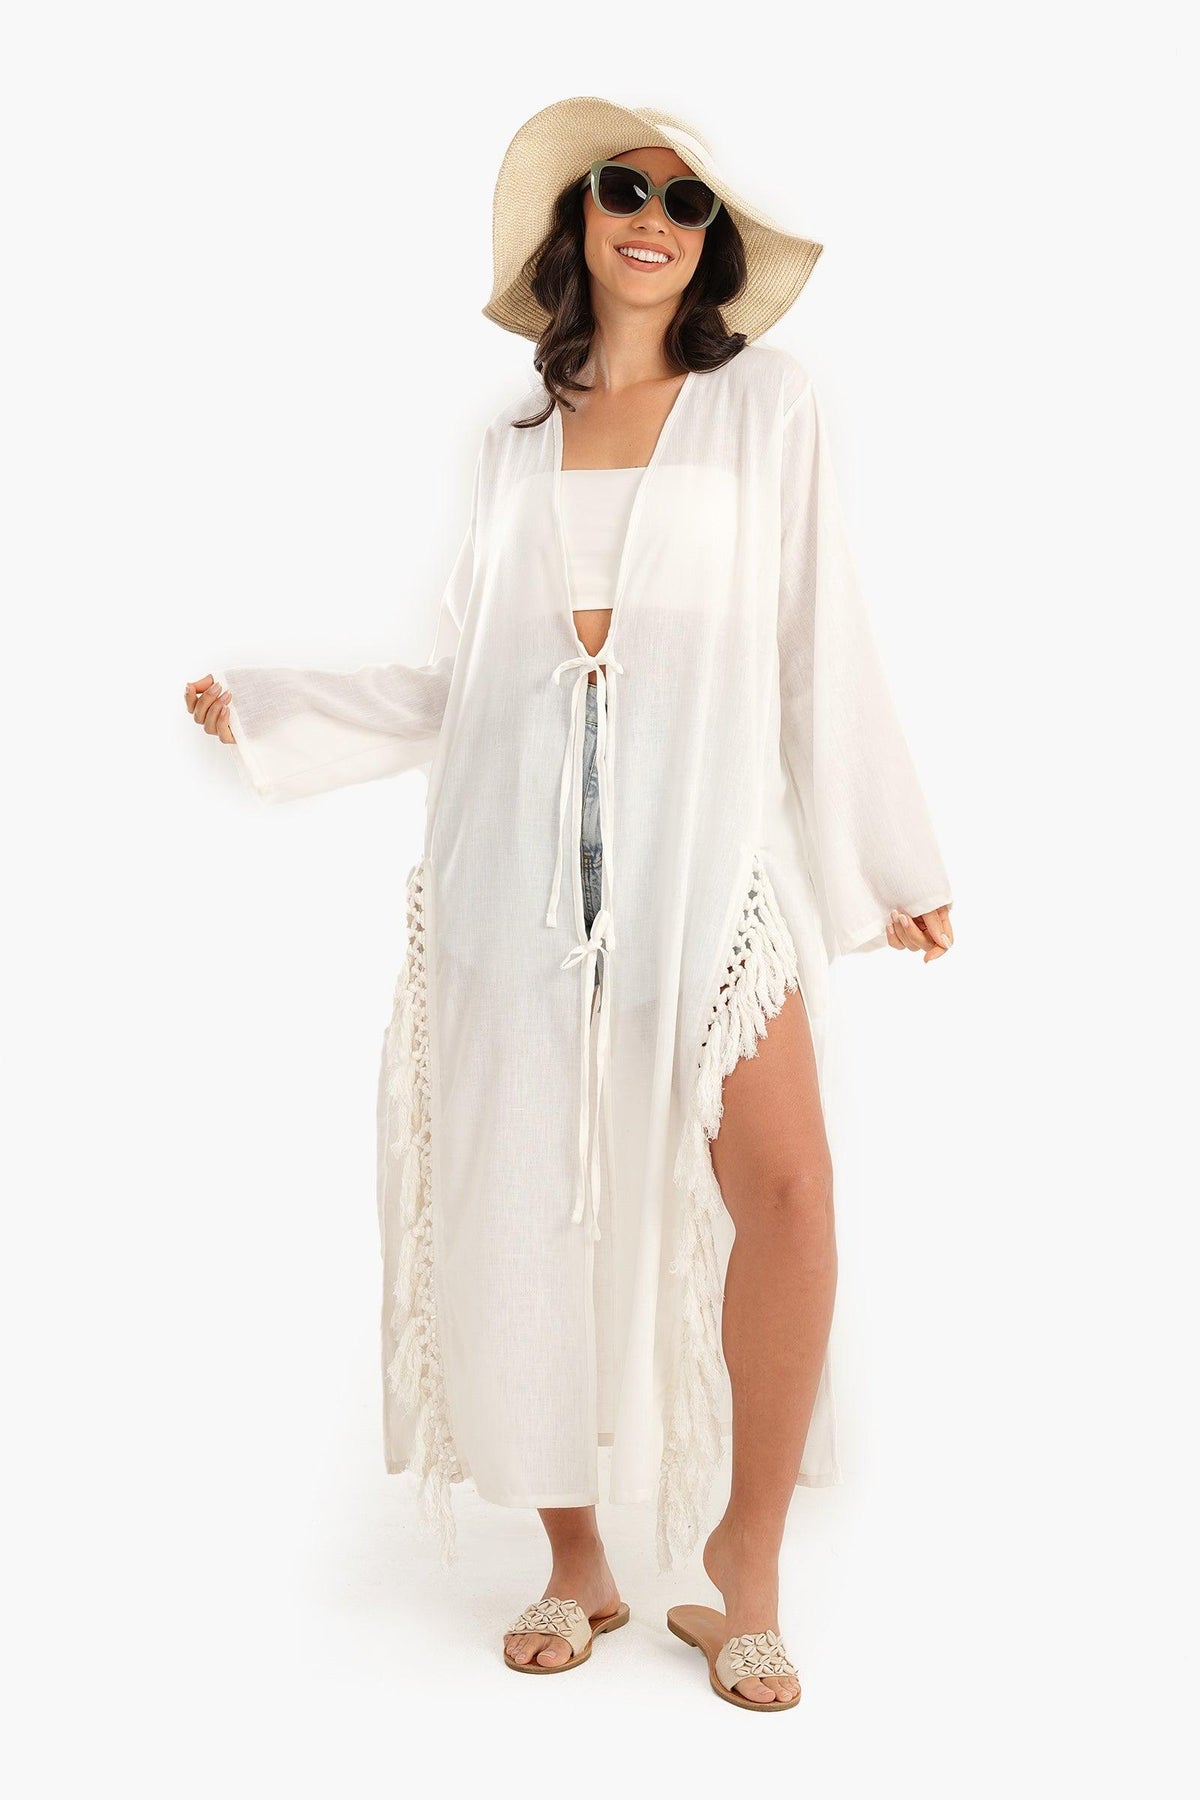 Beachwear Kimono with Fringes - Carina - كارينا